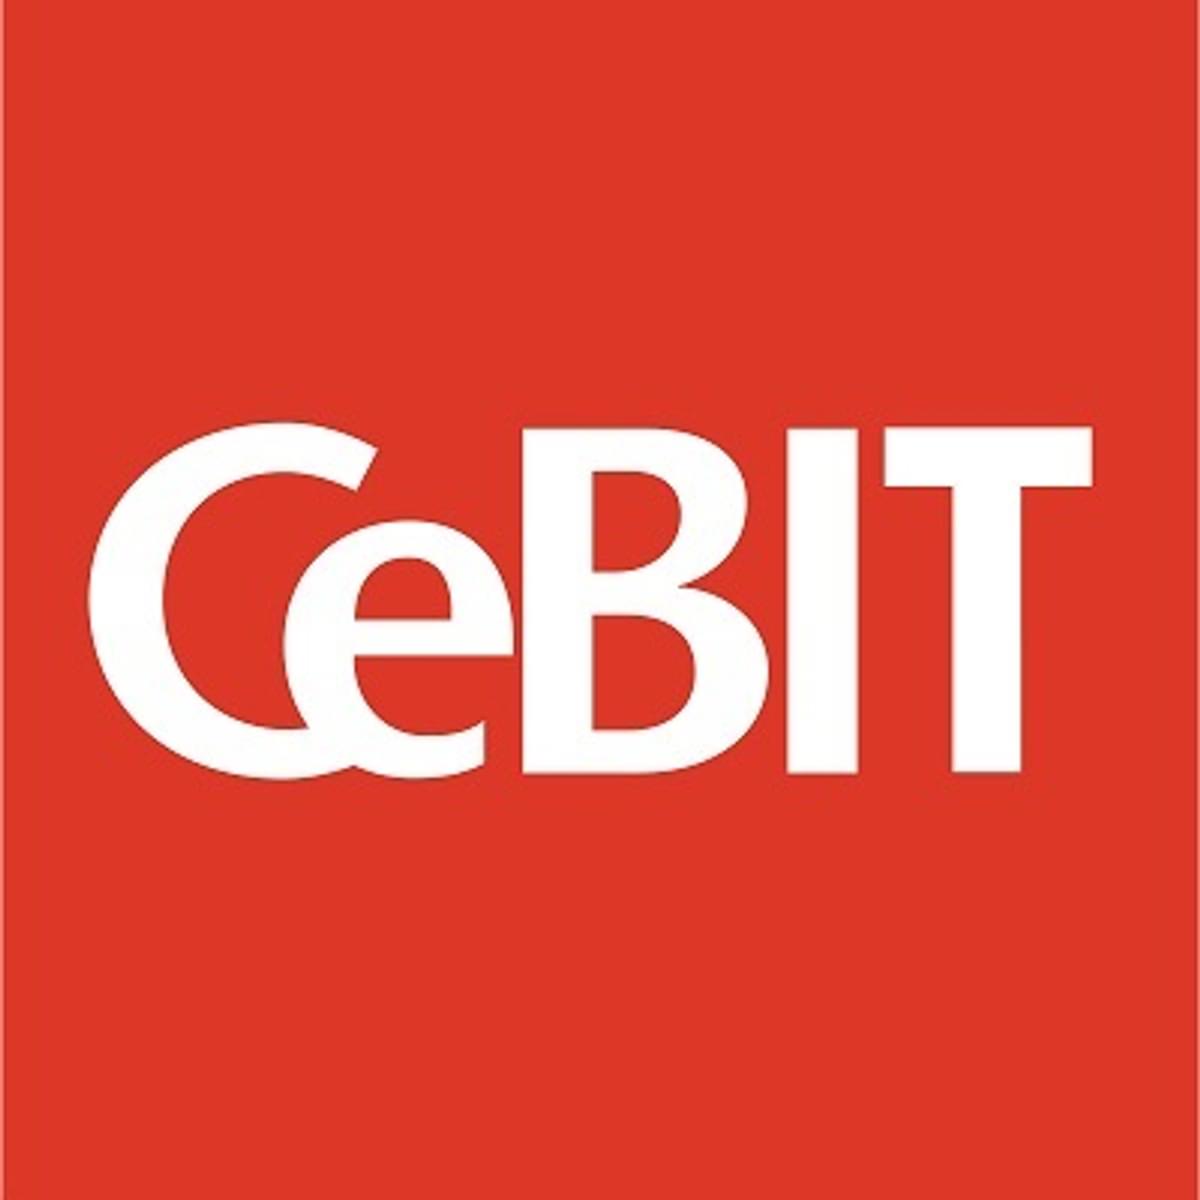 CEBIT 2018 image